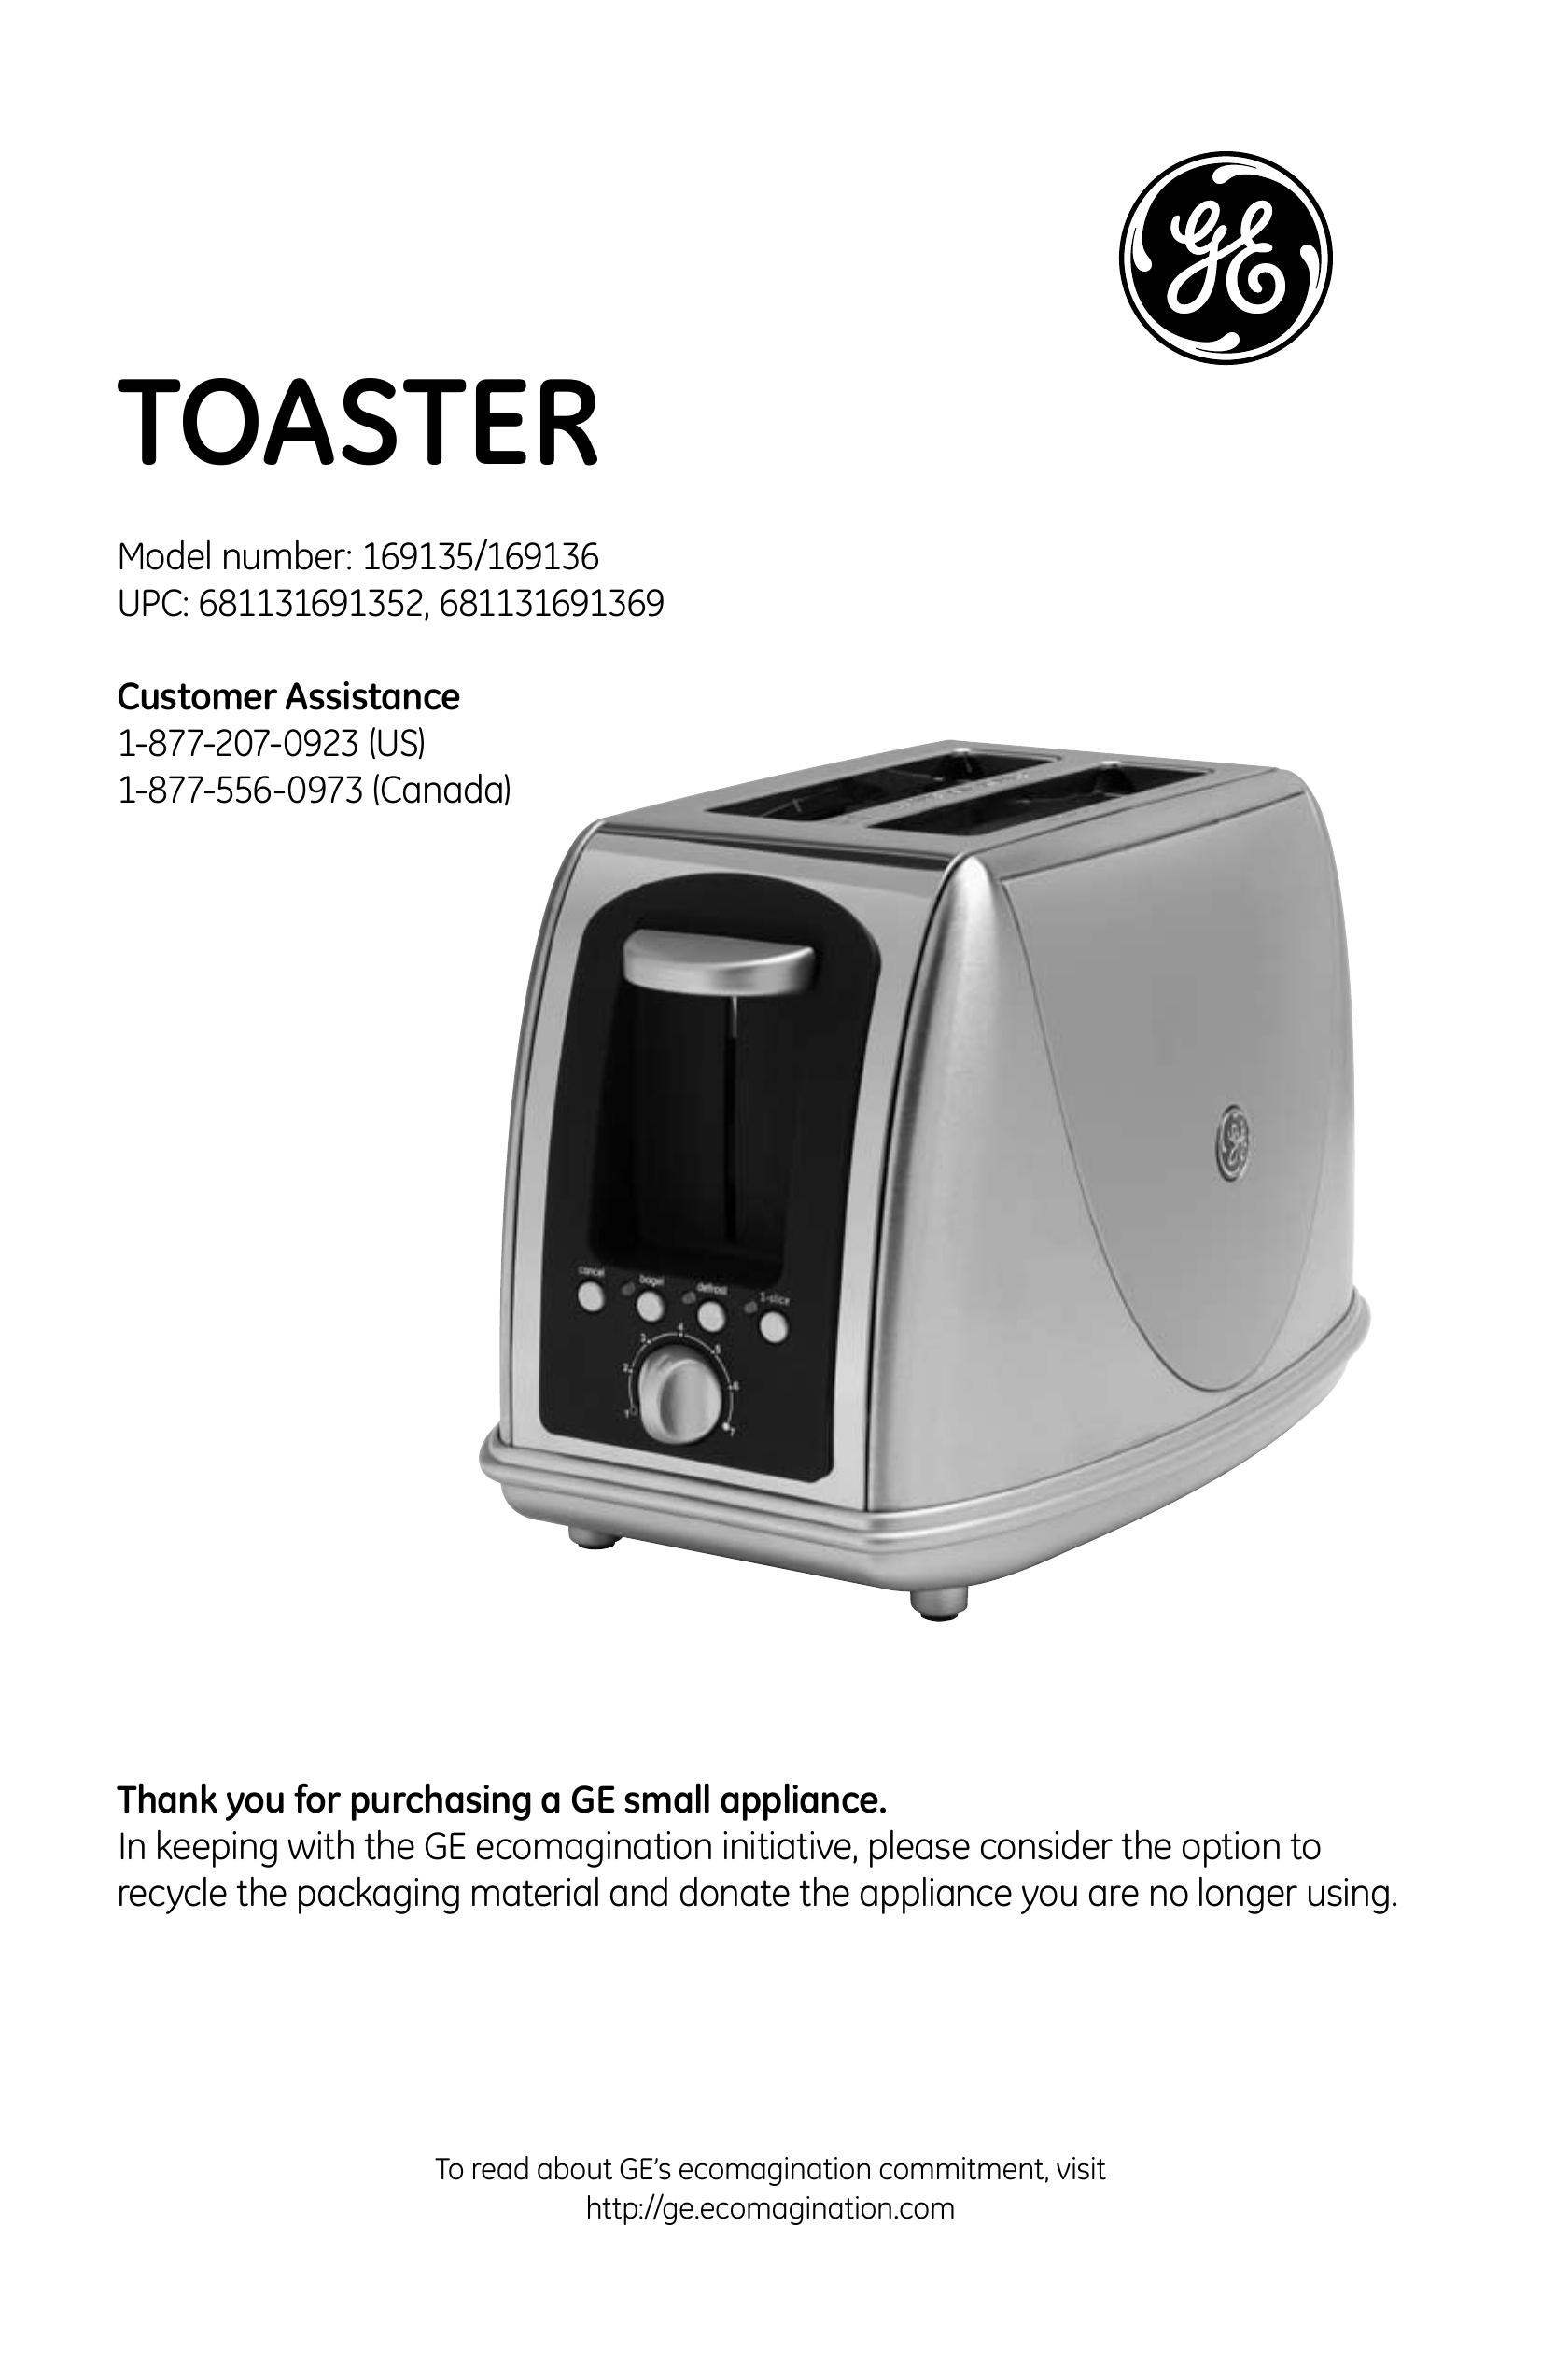 GE 169100 Toaster User Manual